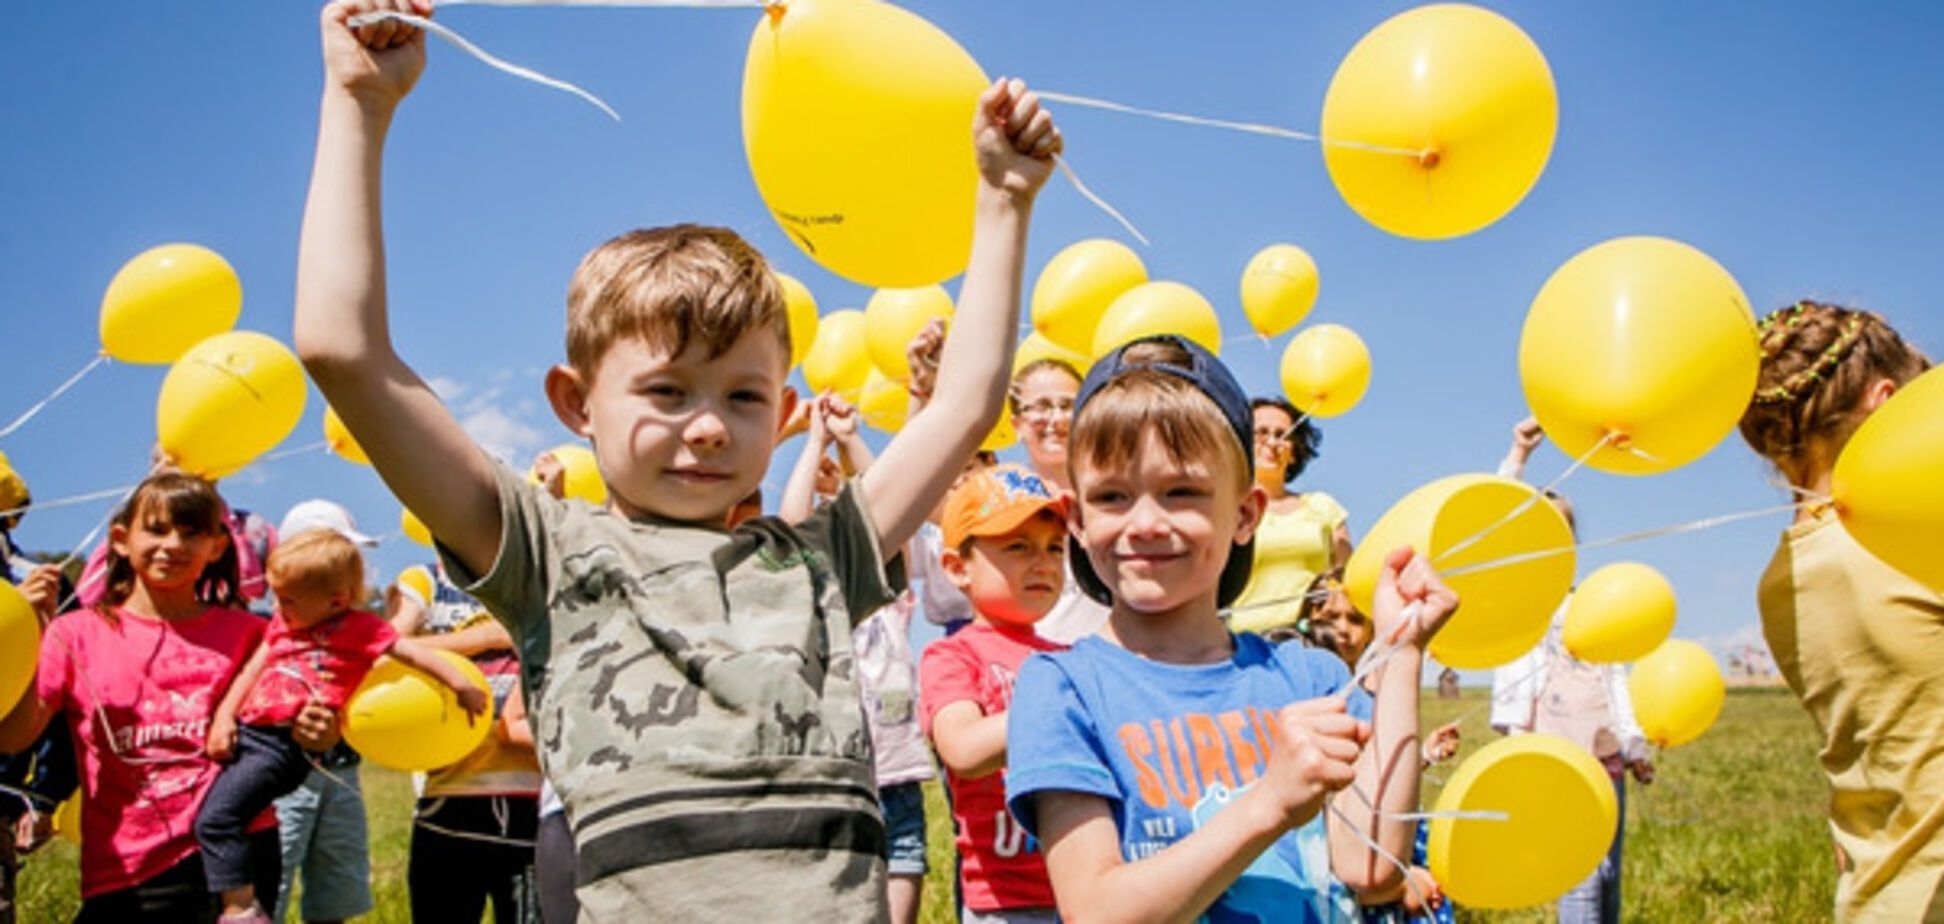 Сиротству – нет! Фонд Рината Ахметова организовал праздник для детей в Пирогово